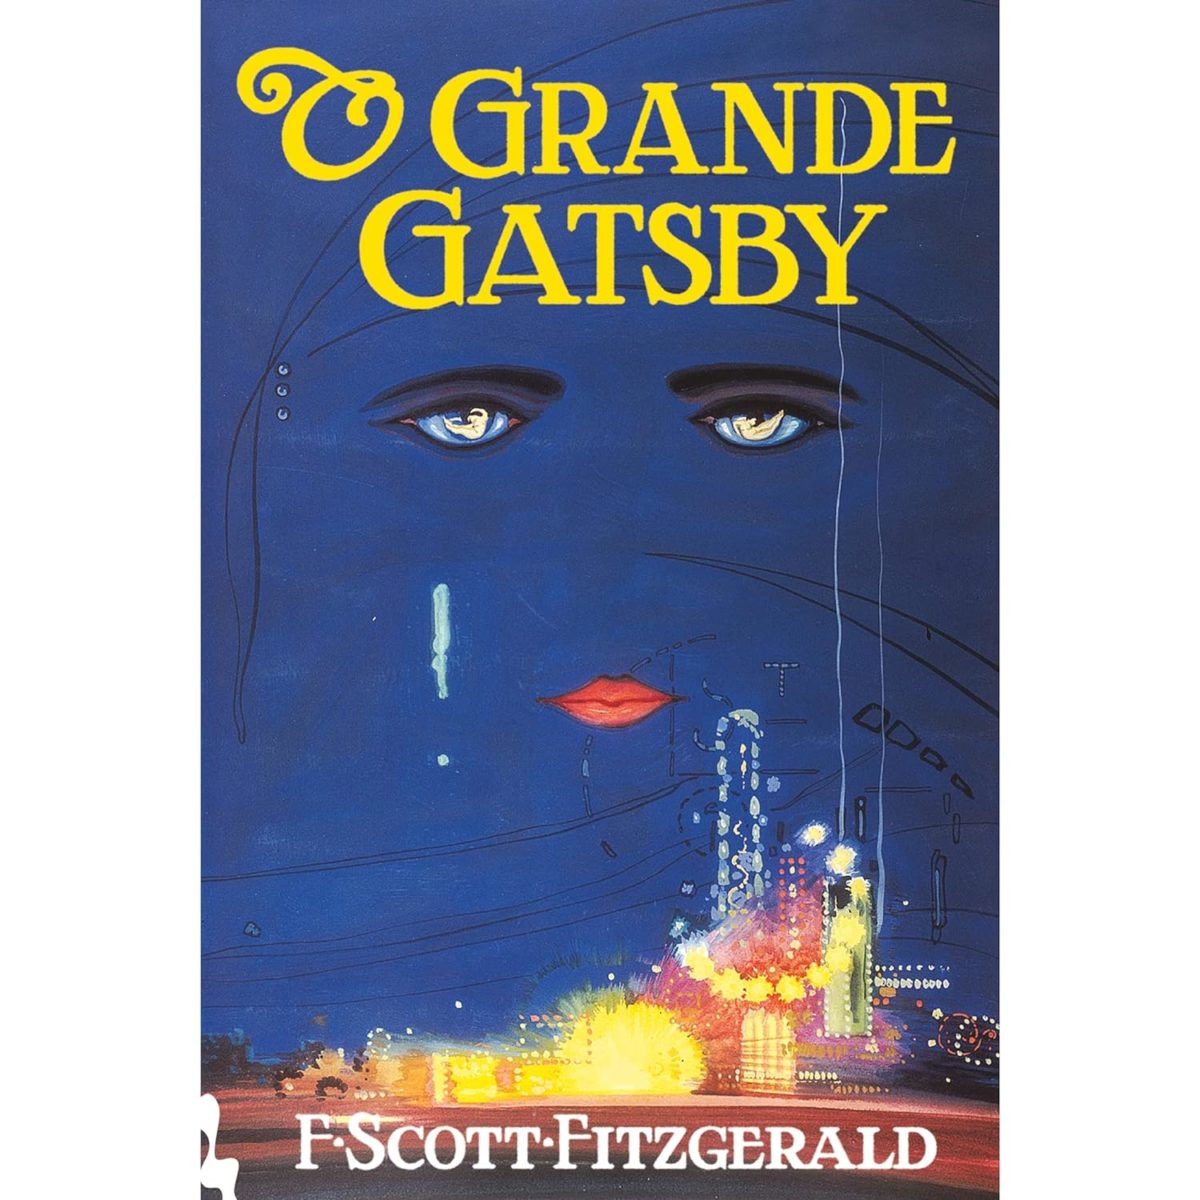 Capa do livro "O Grande Gatsby", de F. Scott Fitzgerald